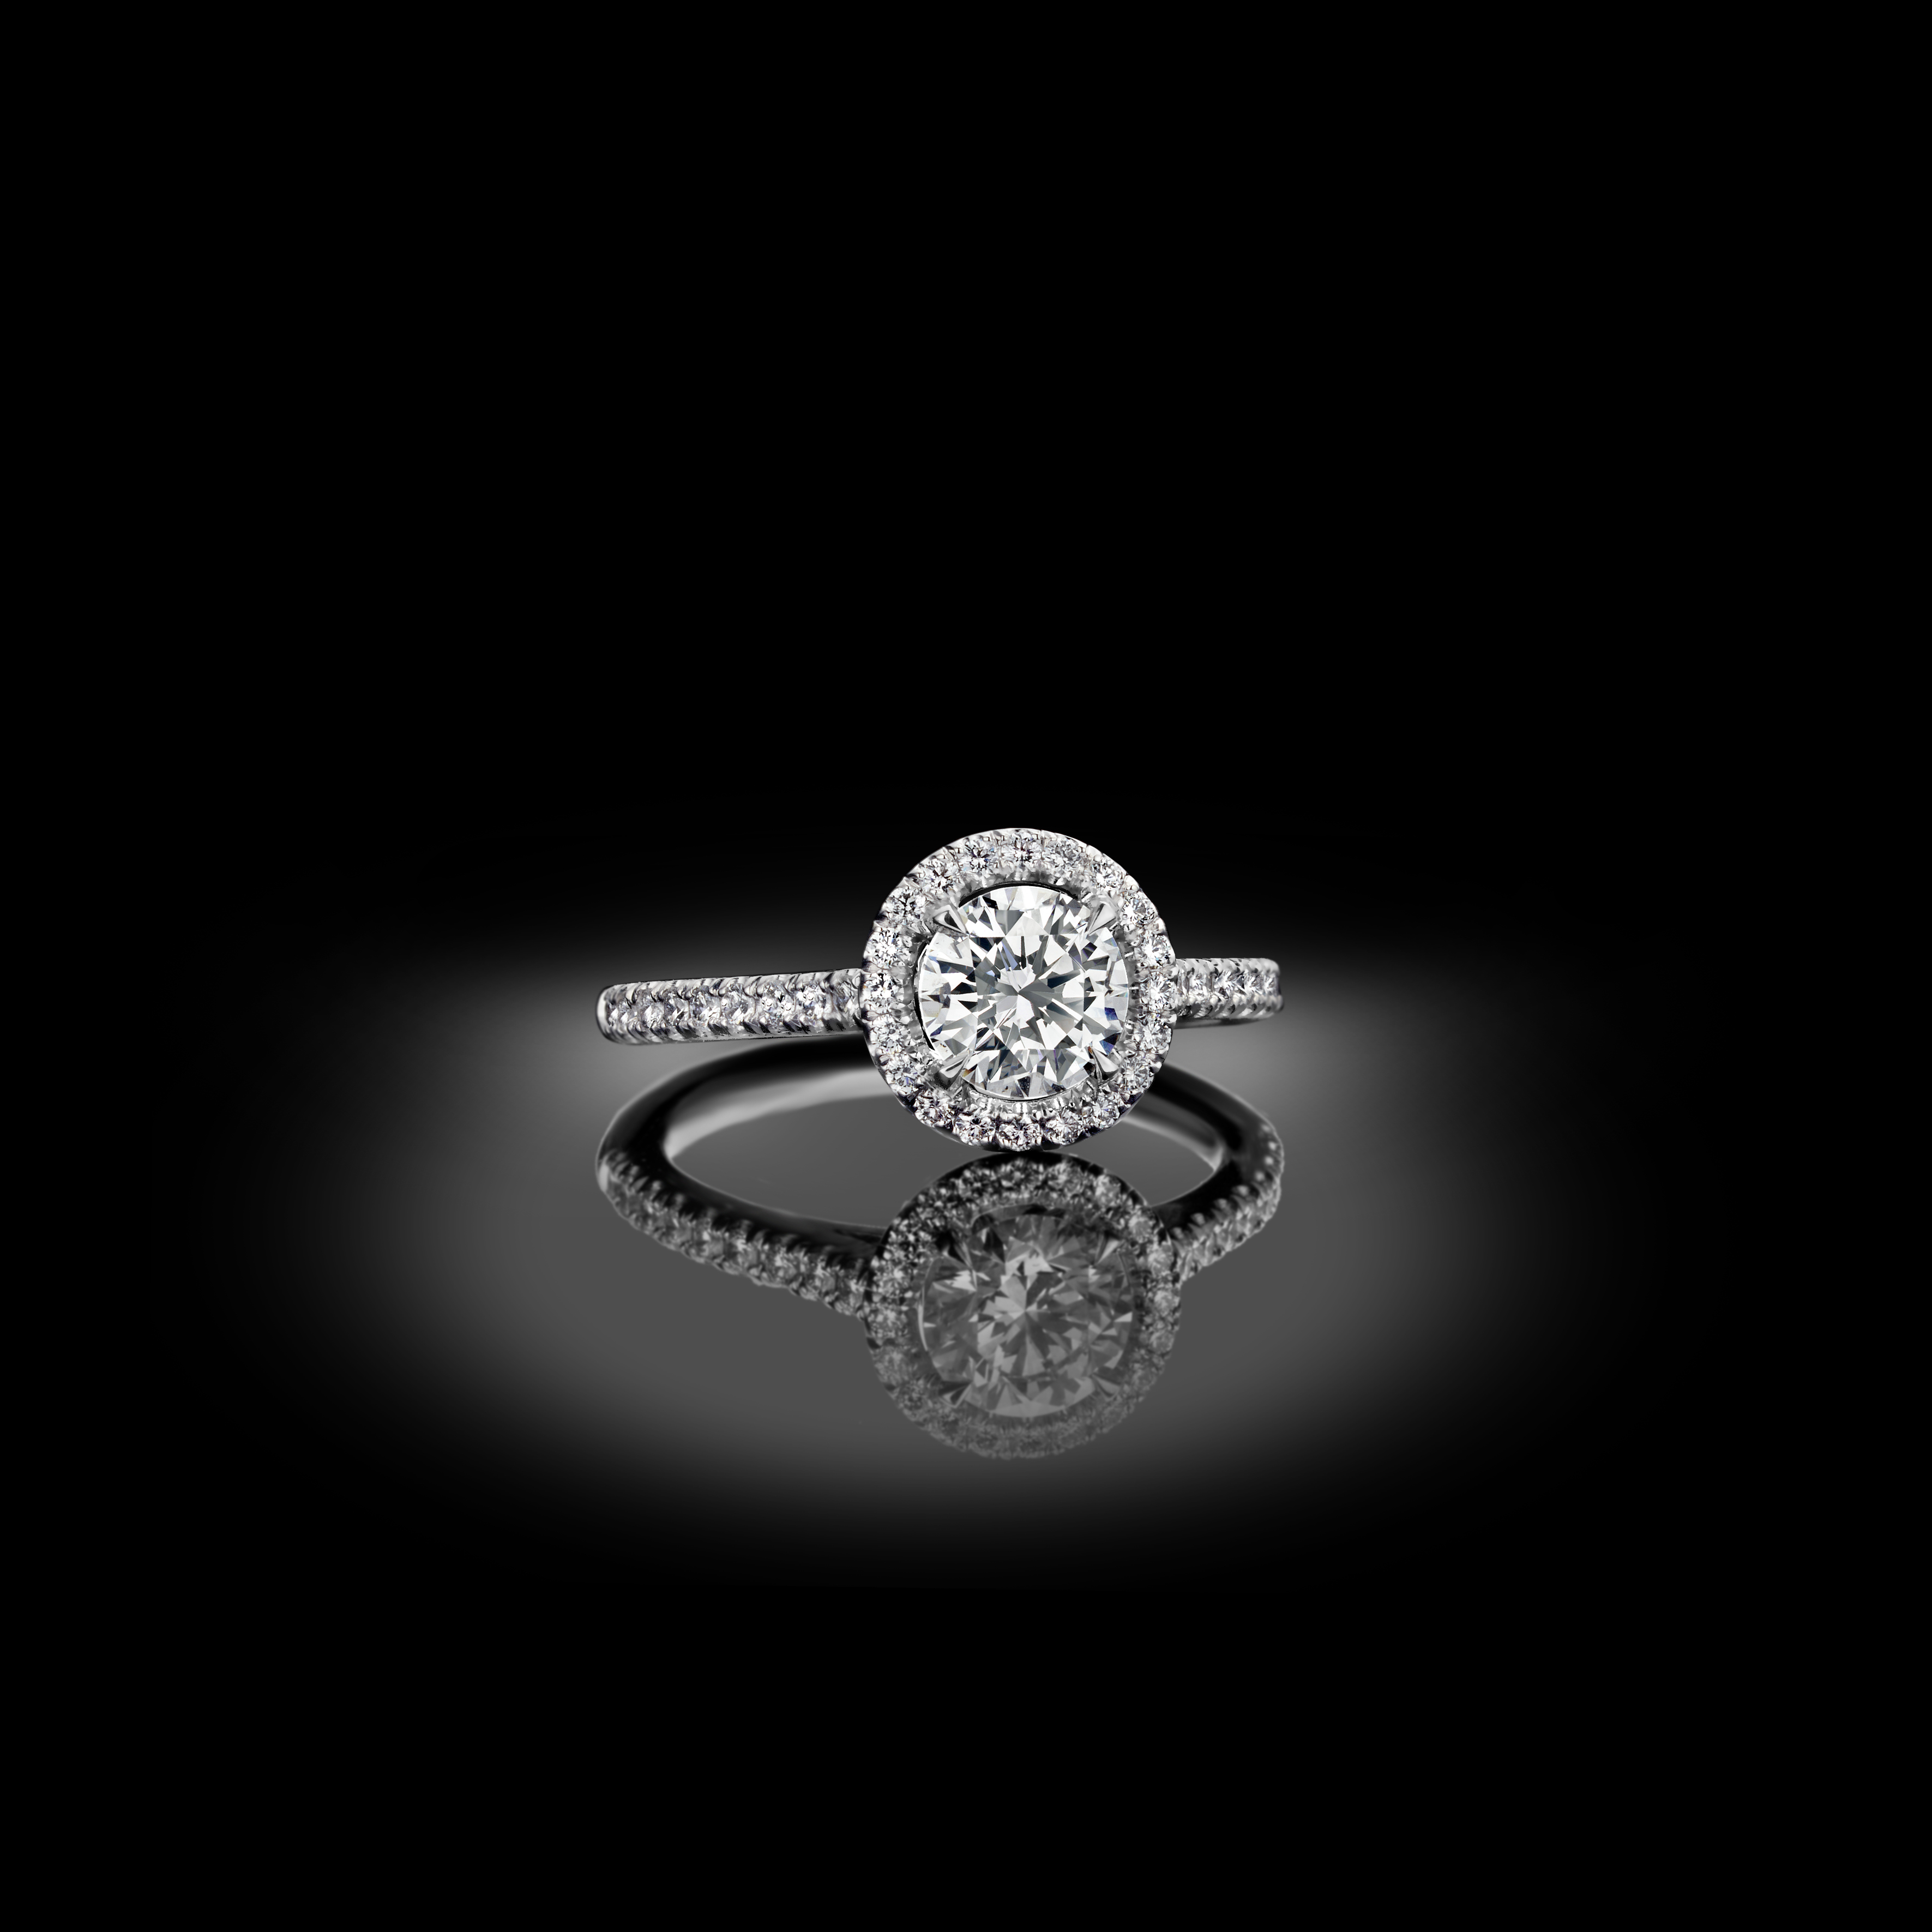 Klassiek en elegant, een tijdloze verlovingsring met diamanten entourage.